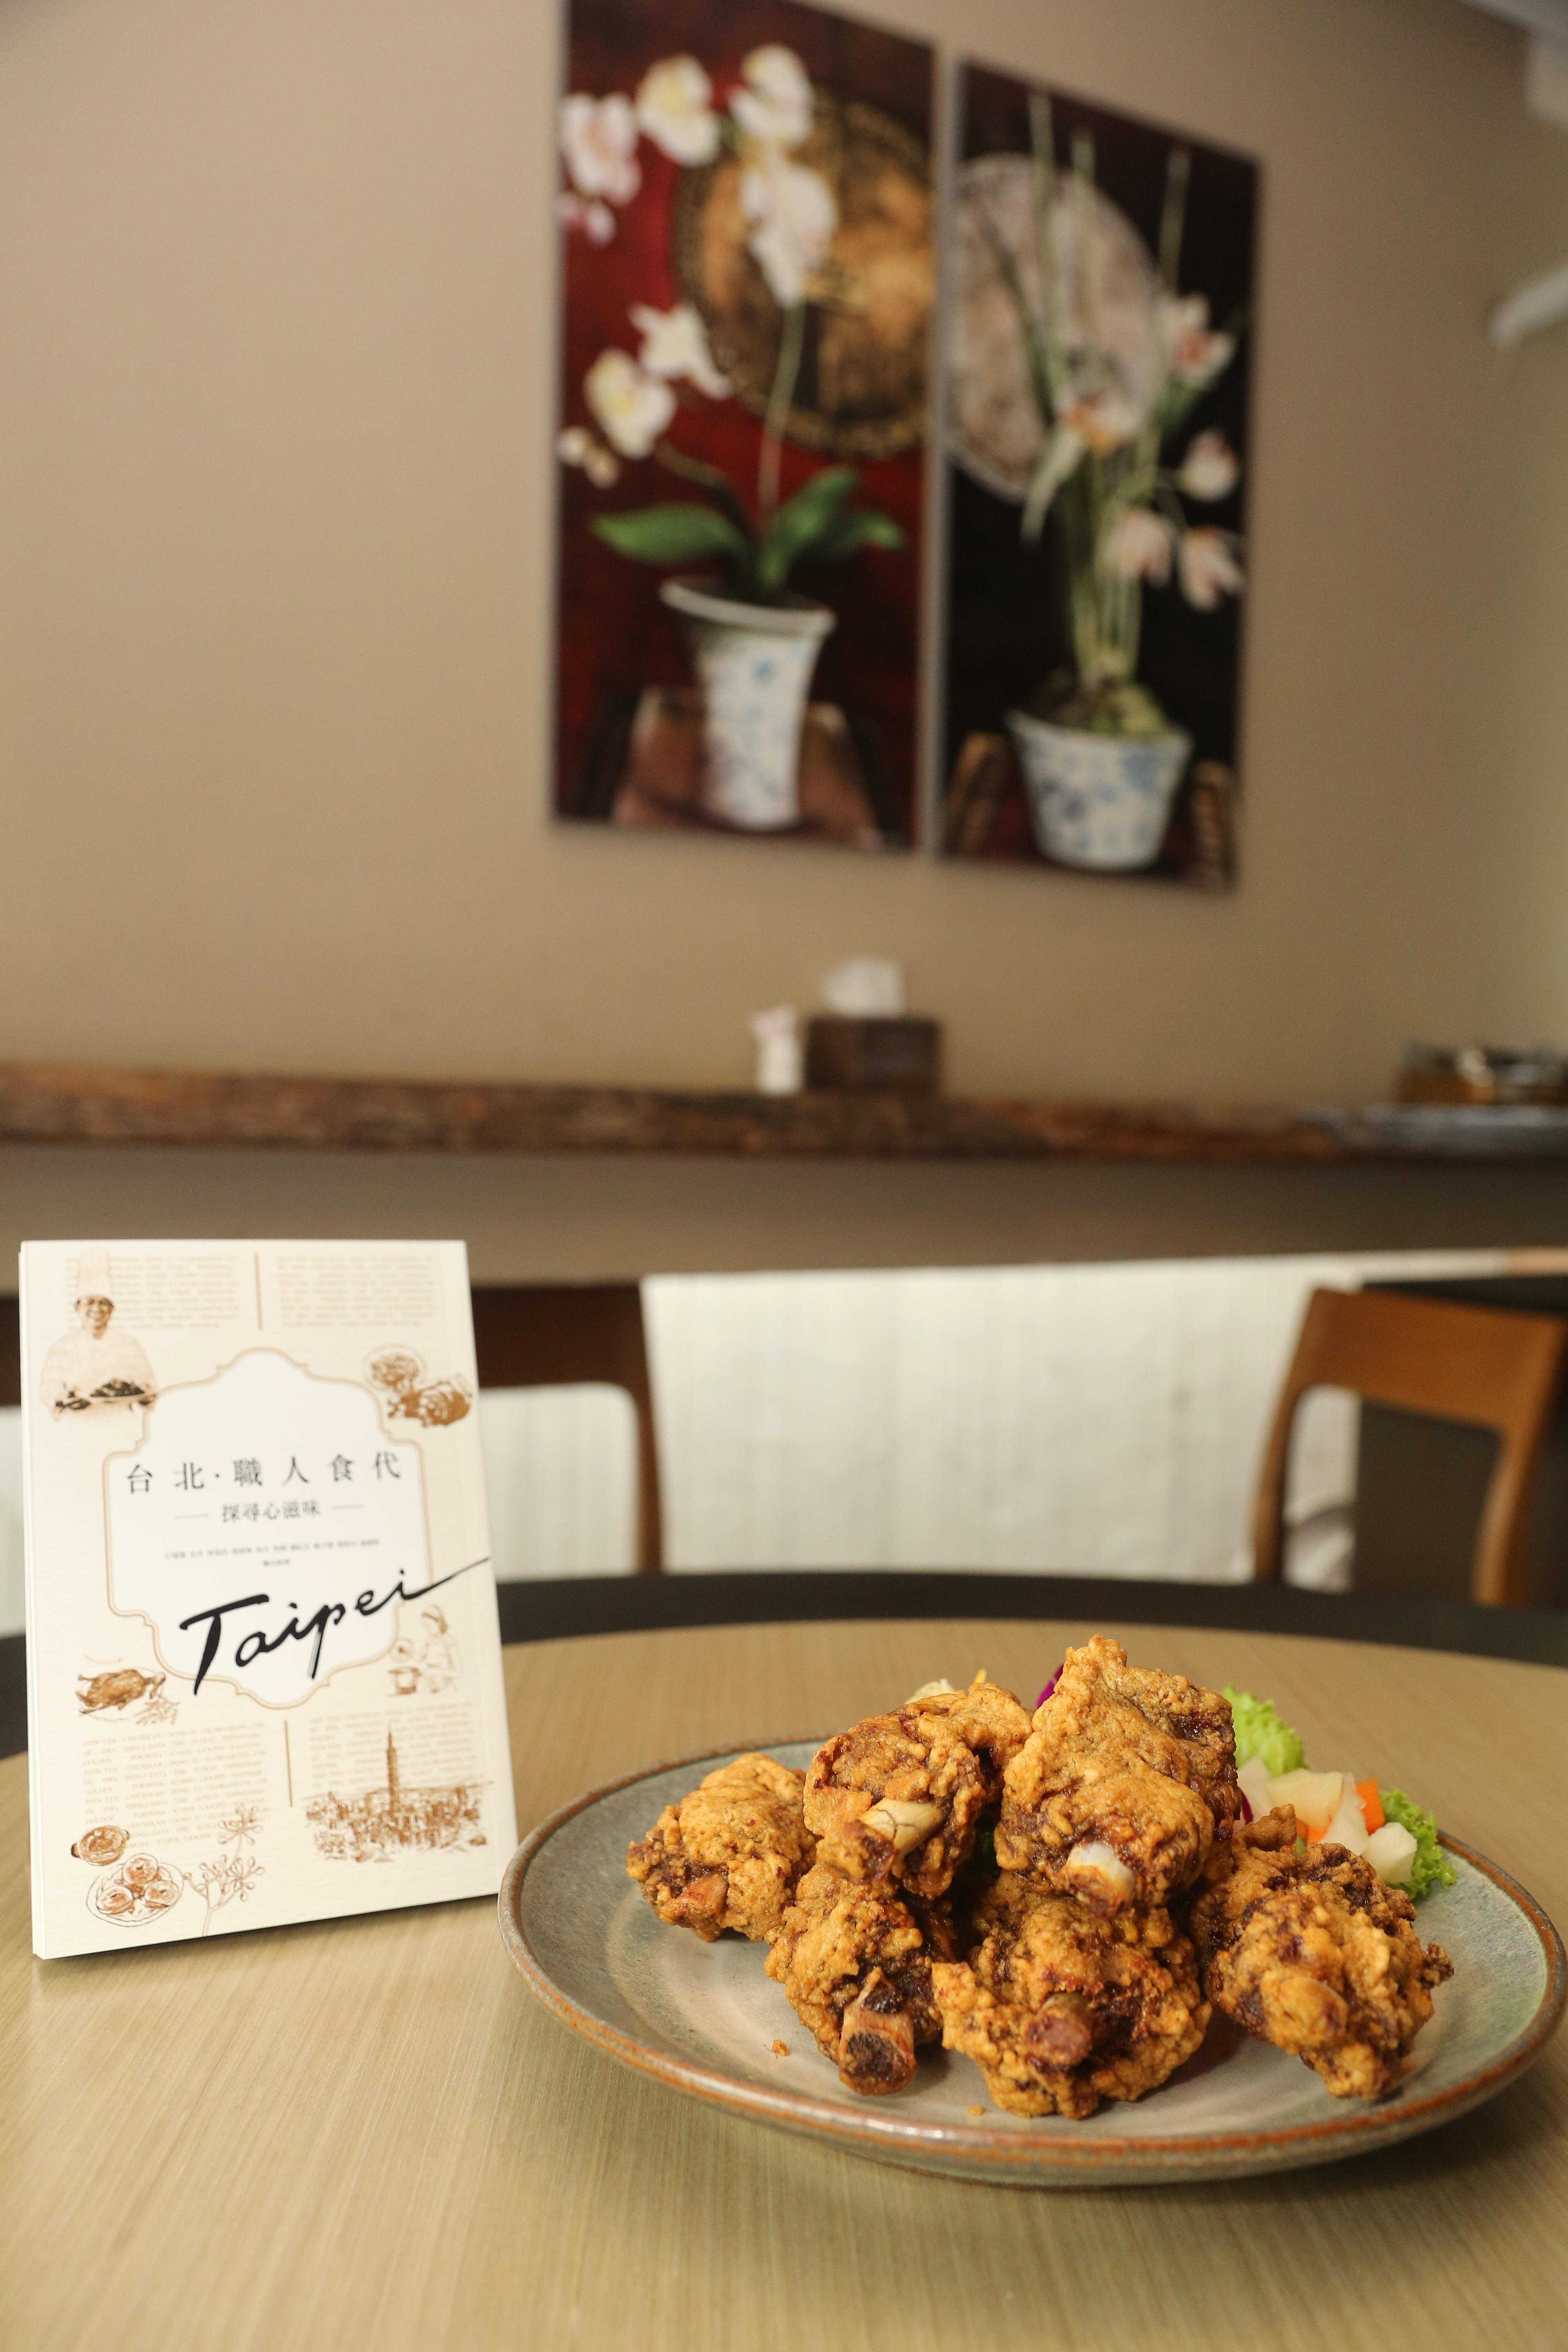 台北市观光传播局今日举办《台北‧职人食代》新书发表会。